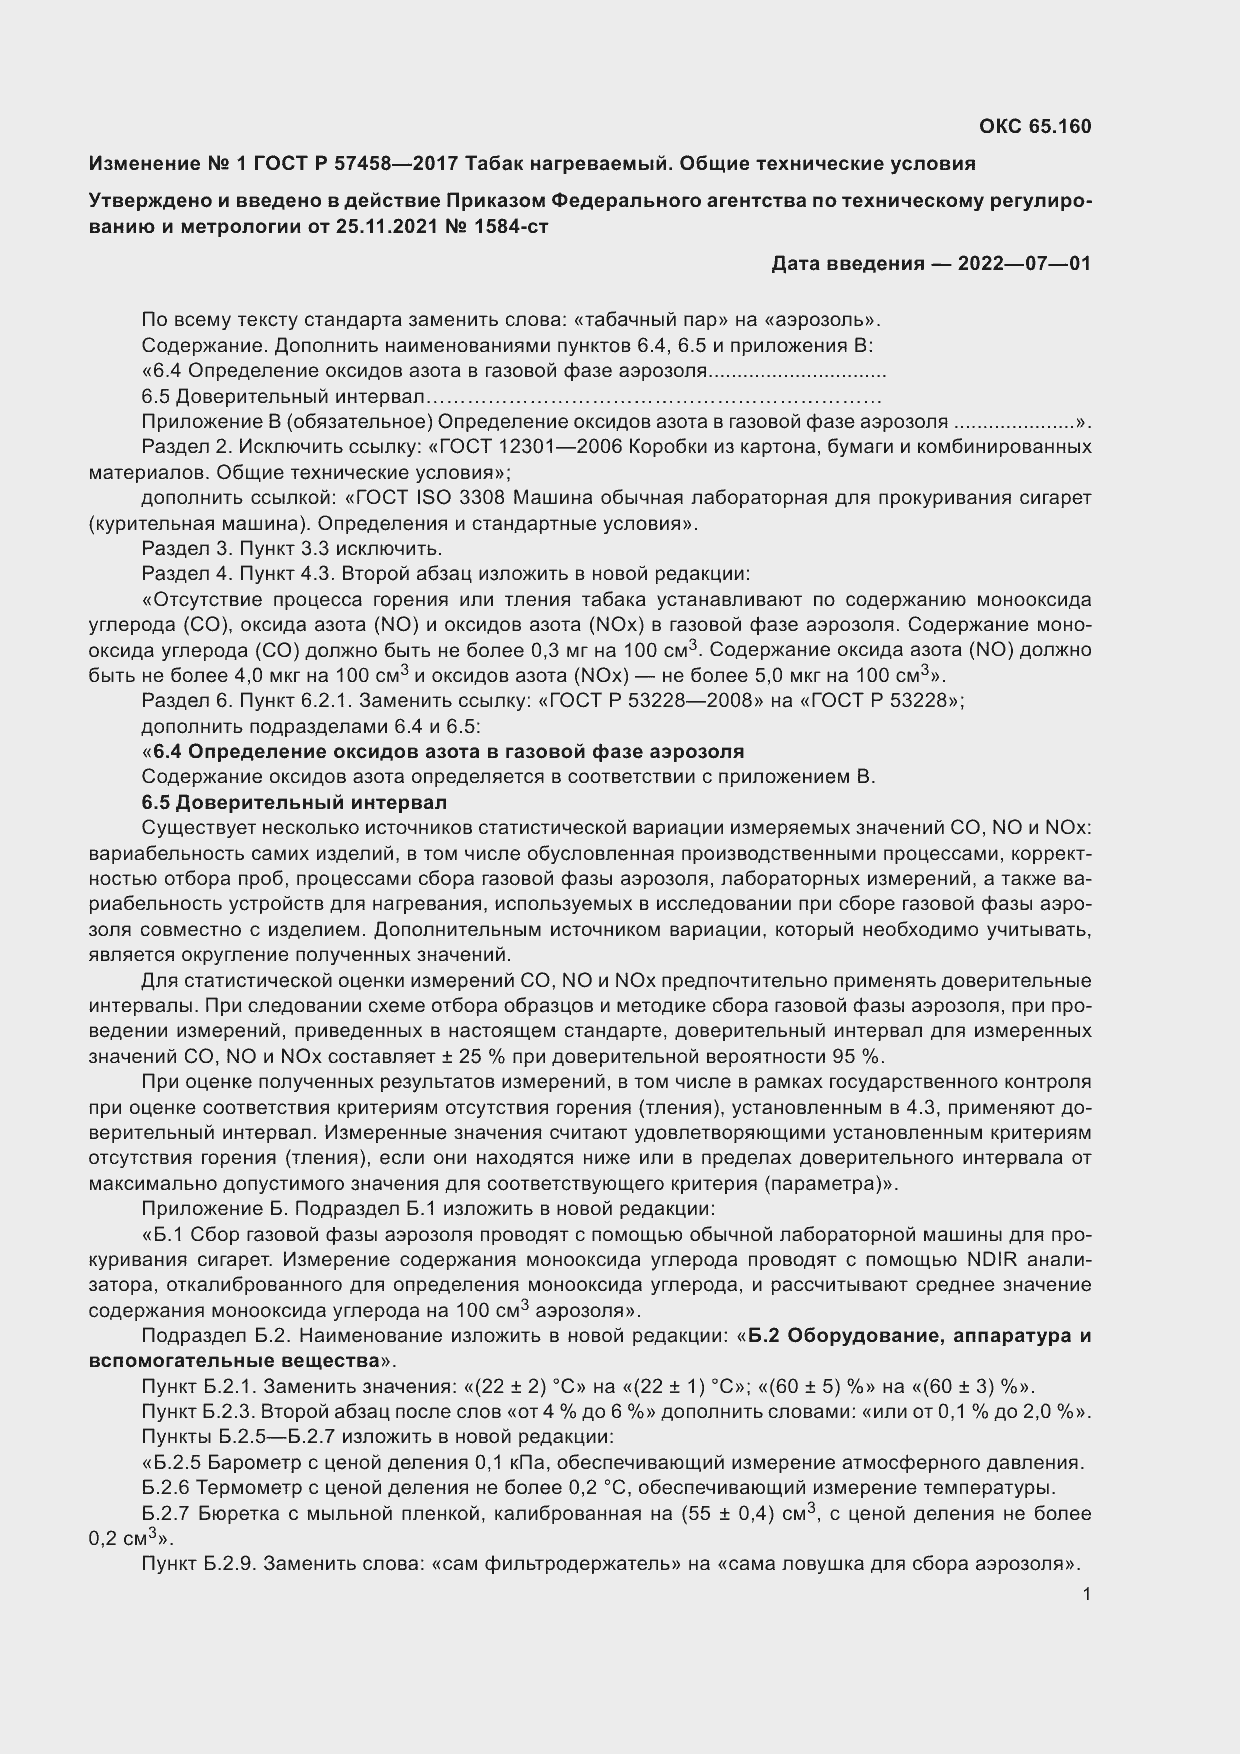 Изменение №1 к ГОСТ Р 57458-2017